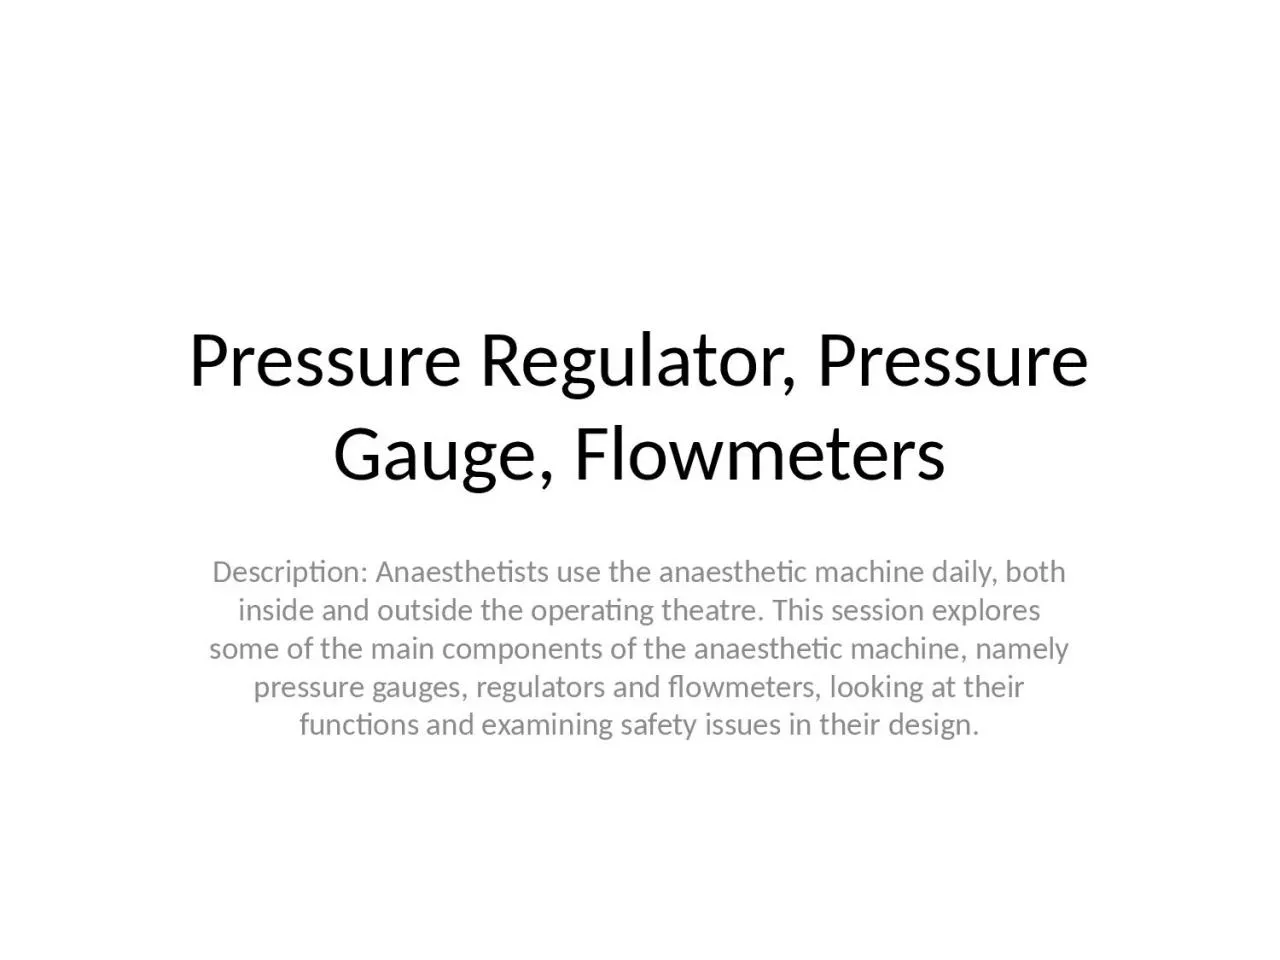 Pressure Regulator, Pressure Gauge, Flowmeters